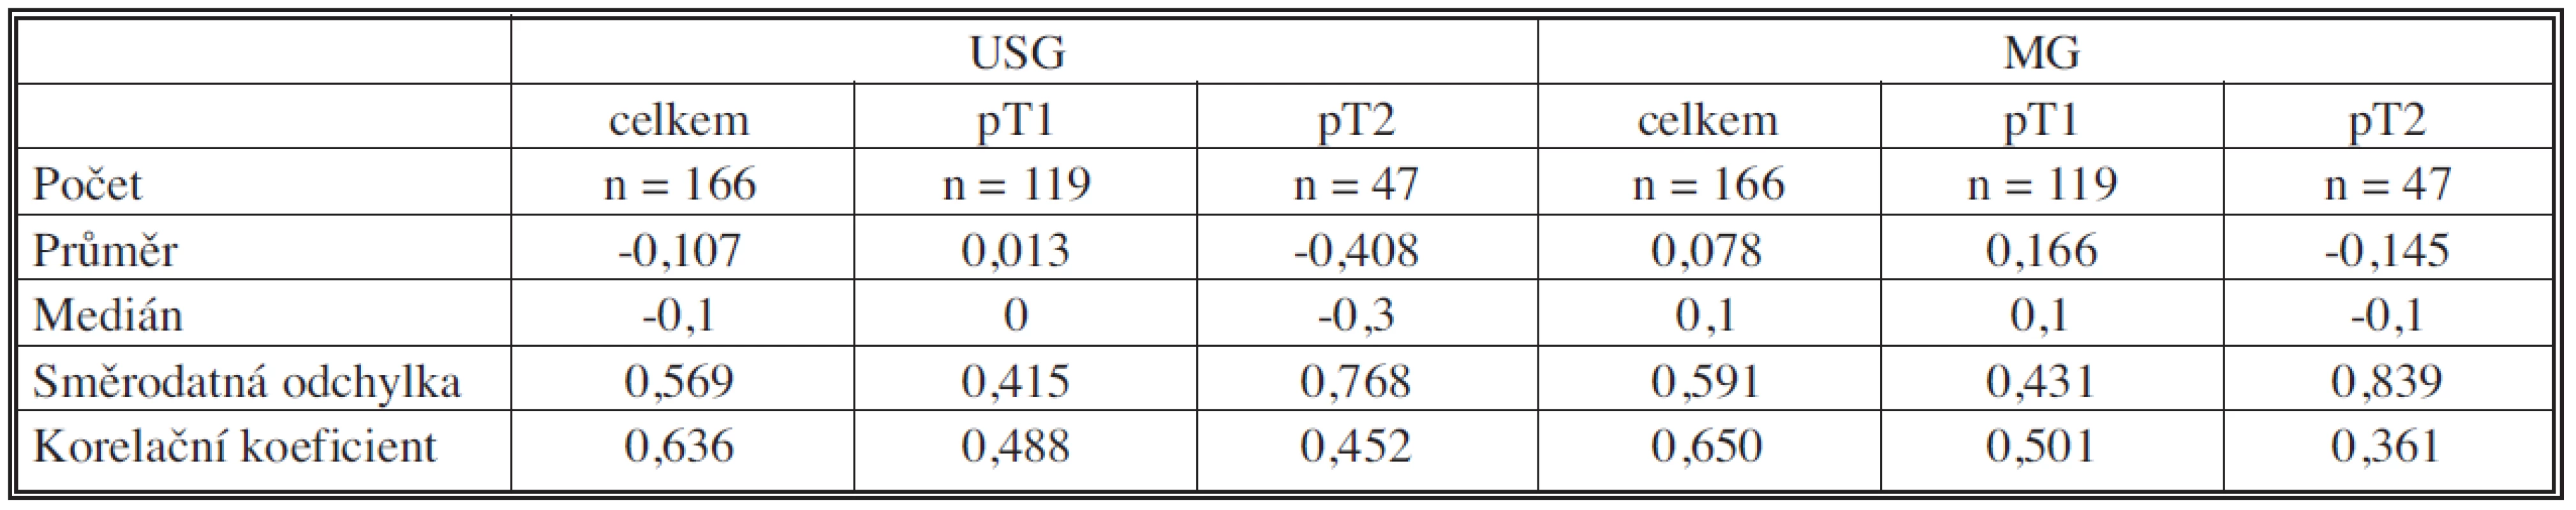 Srovnání výsledků USG a MG podle velikosti
Tab. 1. Comparison between USG and MG results, according to the size